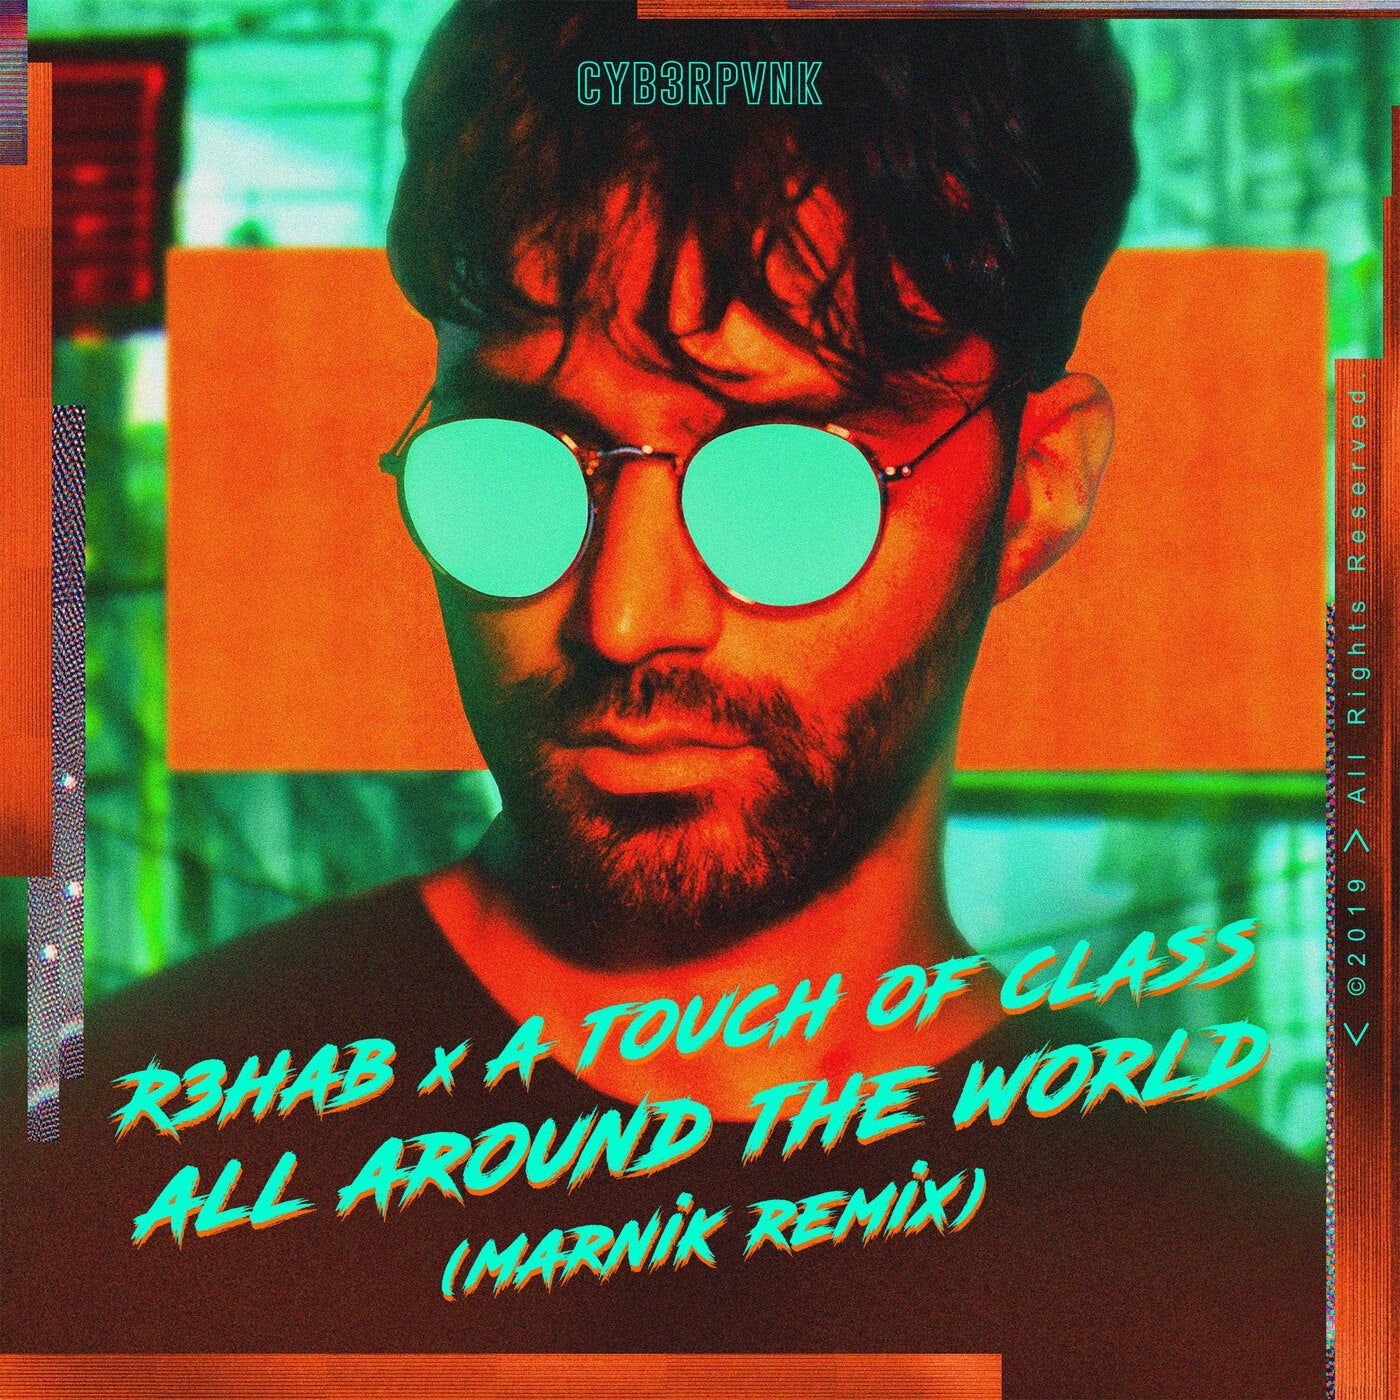 All Around The World (La La La) (Marnik Remix - Extended Version